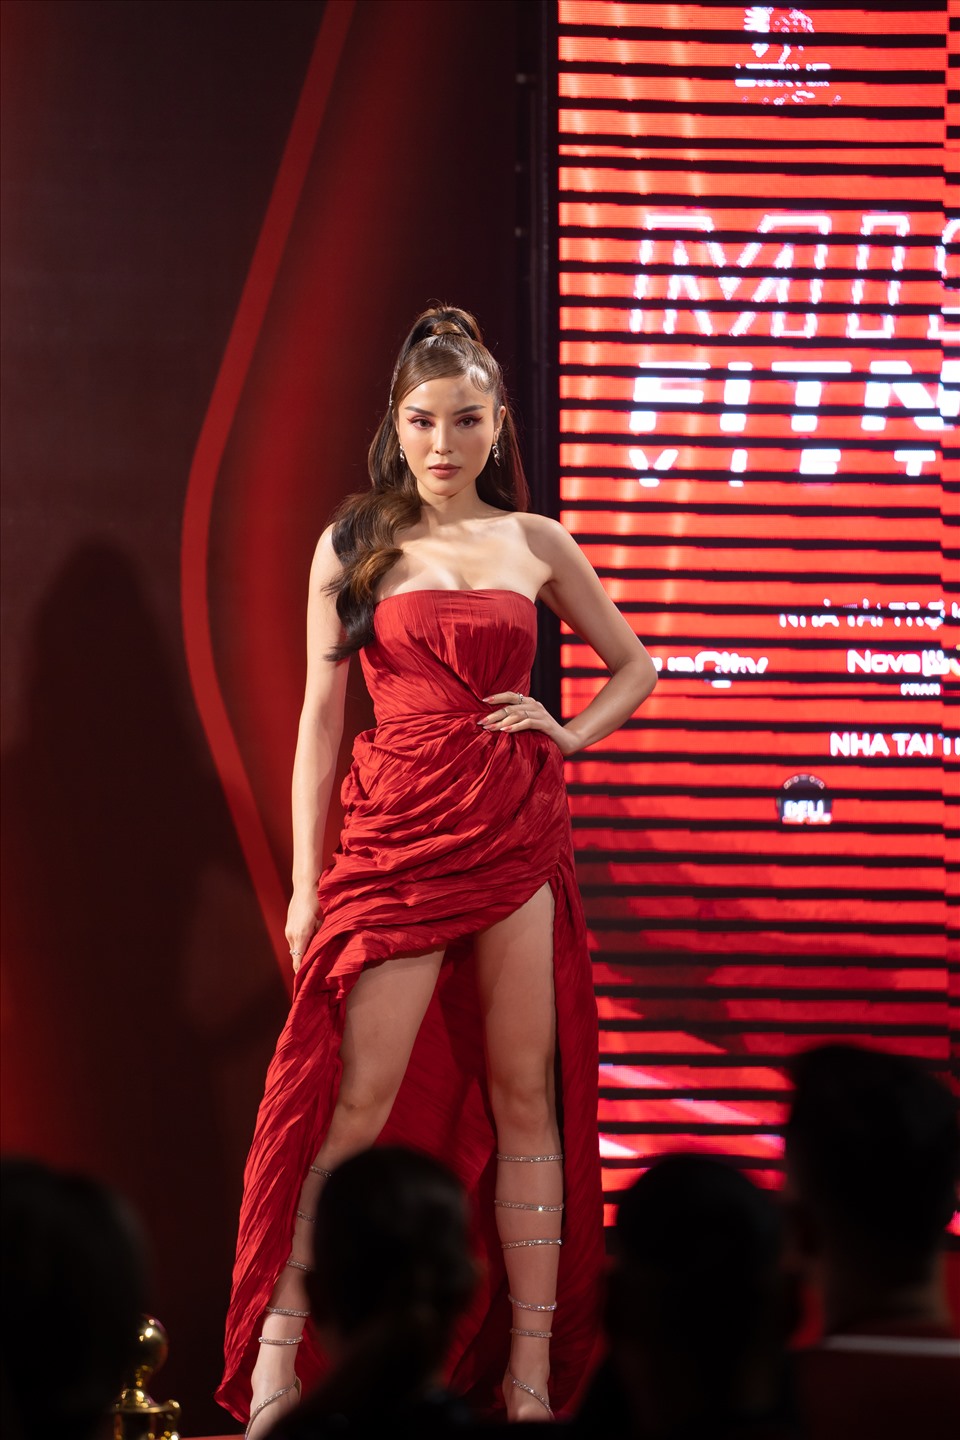 Xuất hiện với vai trò Mentor của chương trình, Siêu mẫu Minh Tú – Hoa hậu Việt Nam Kỳ Duyên – Á hậu Quốc tế Thúy Vân “đọ sắc” trong những thiết kế có tông đỏ nổi bật - màu sắc chủ đạo của chương trình.